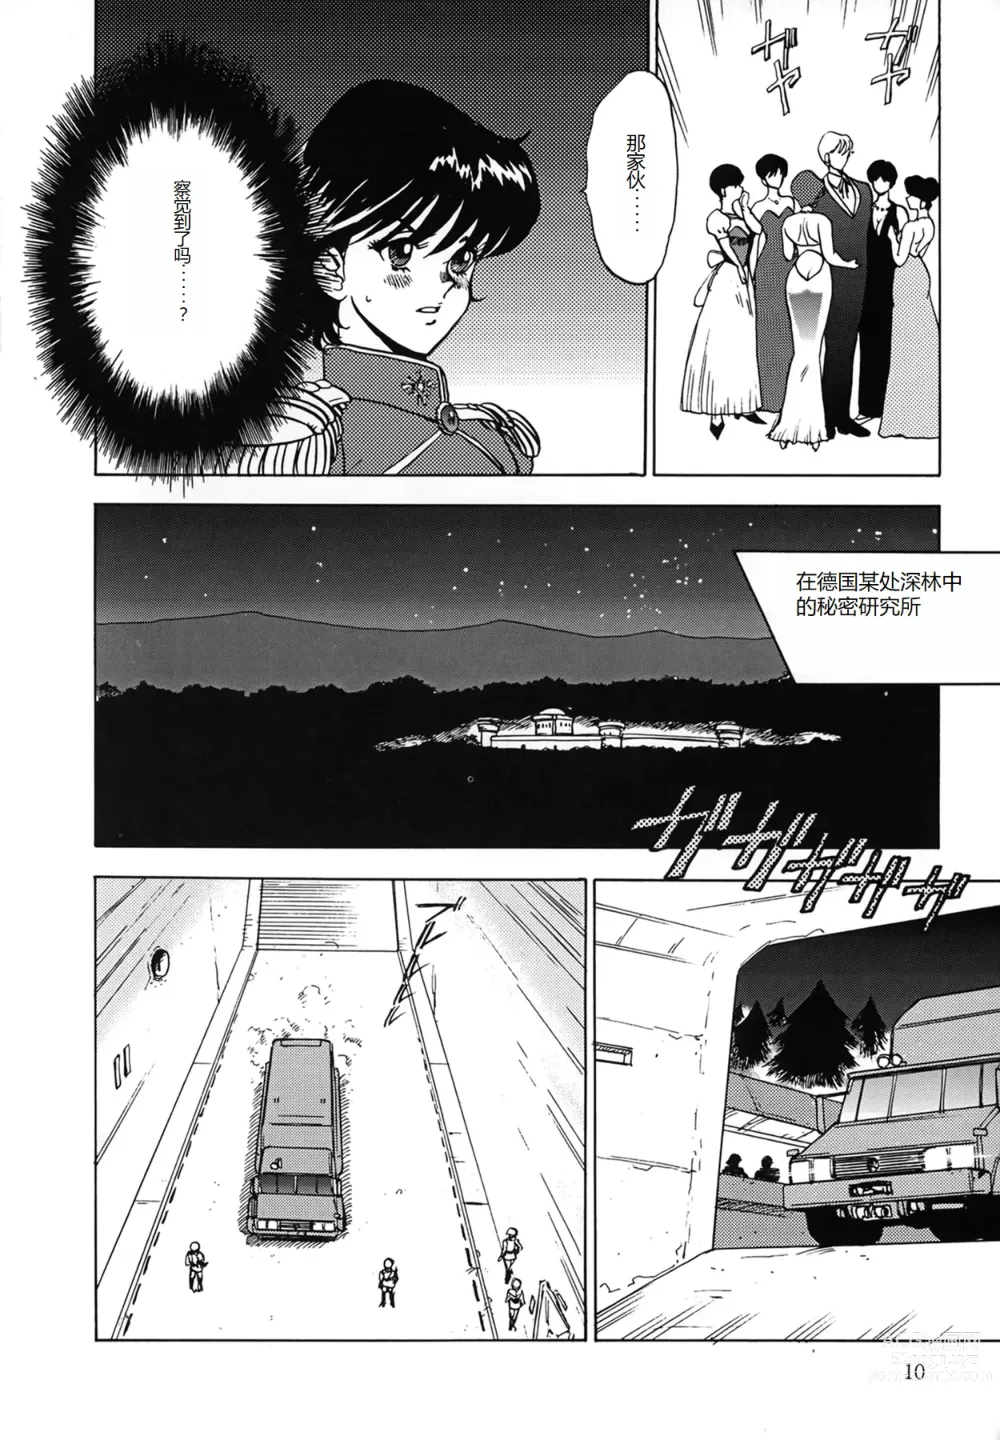 Page 10 of manga Inbi Teikoku